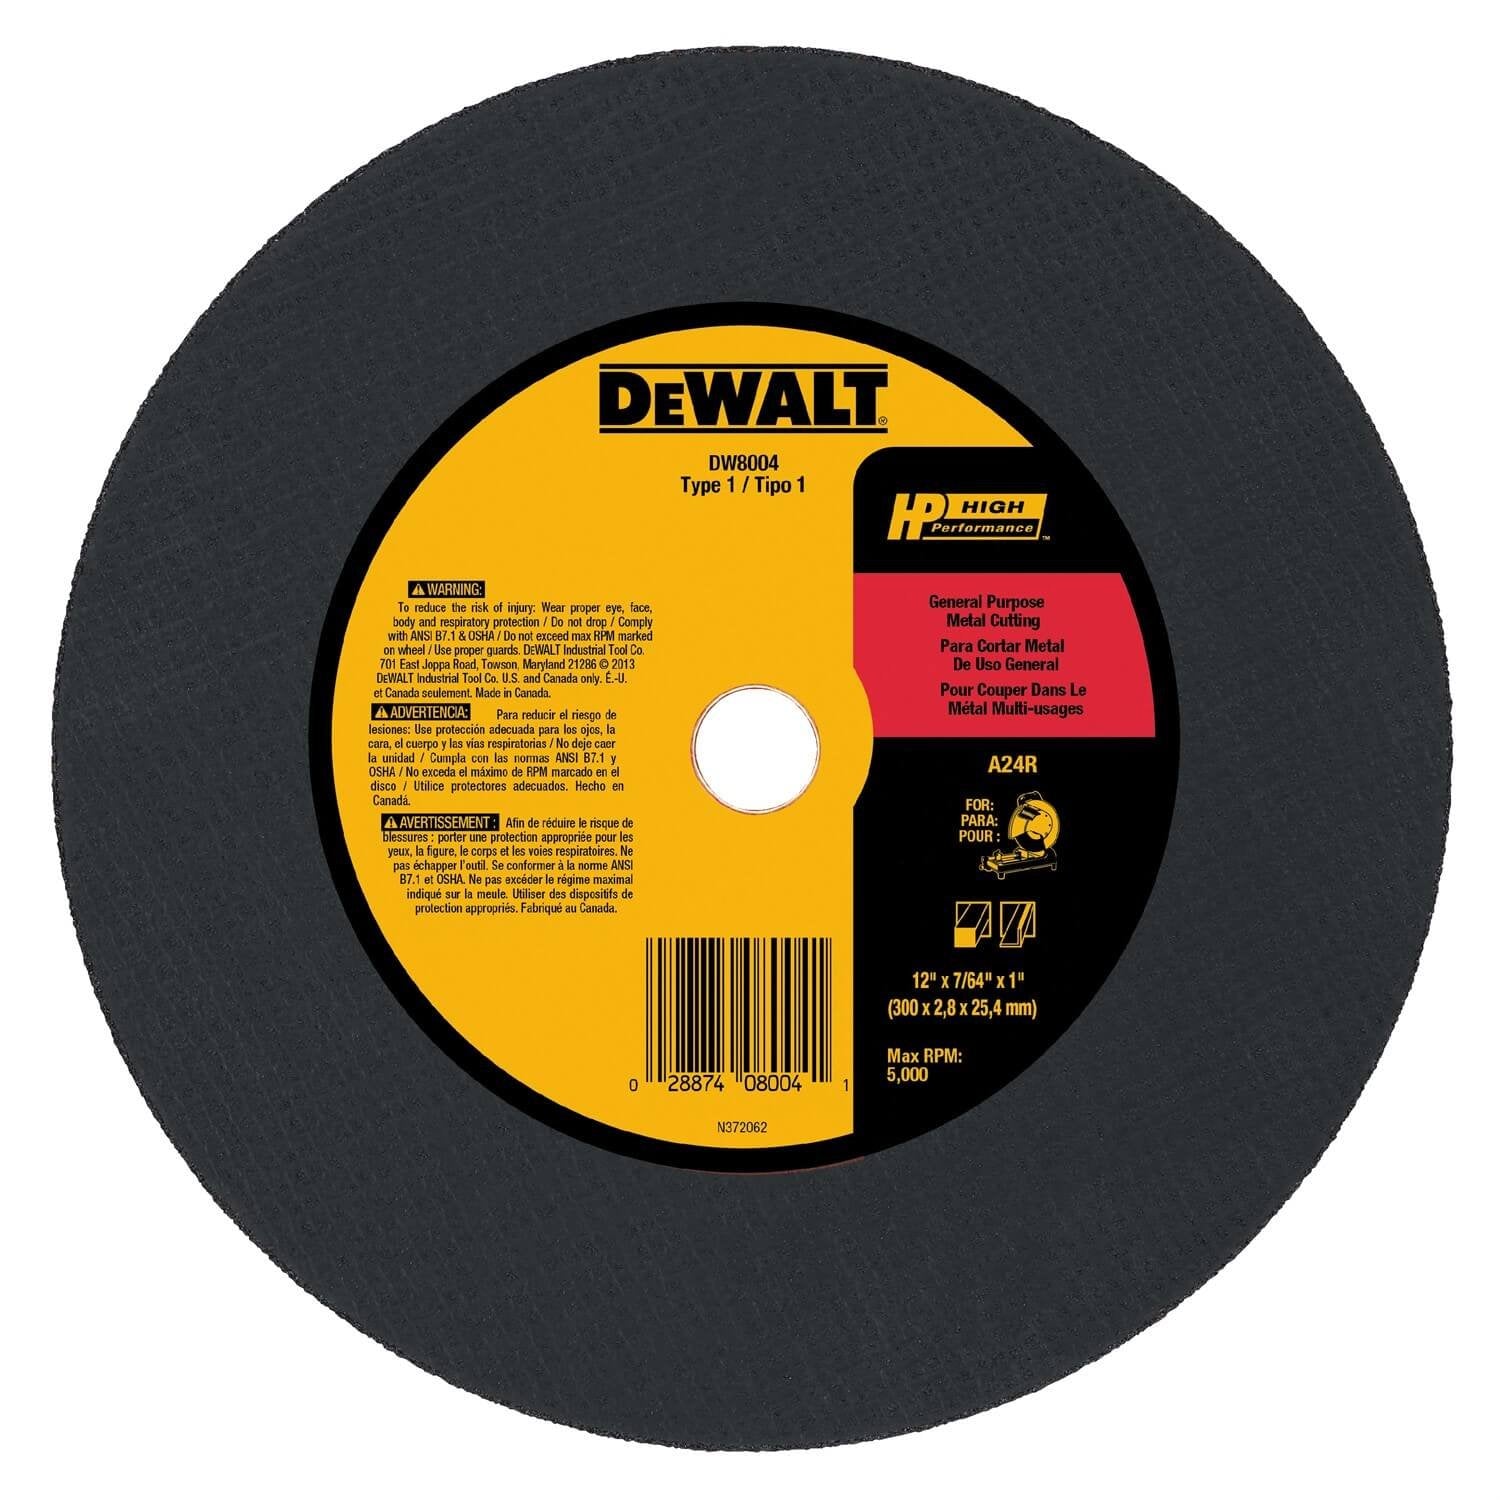 Dewalt DW8004 - Chopsaw Blade 12"x 7/64" x 1"